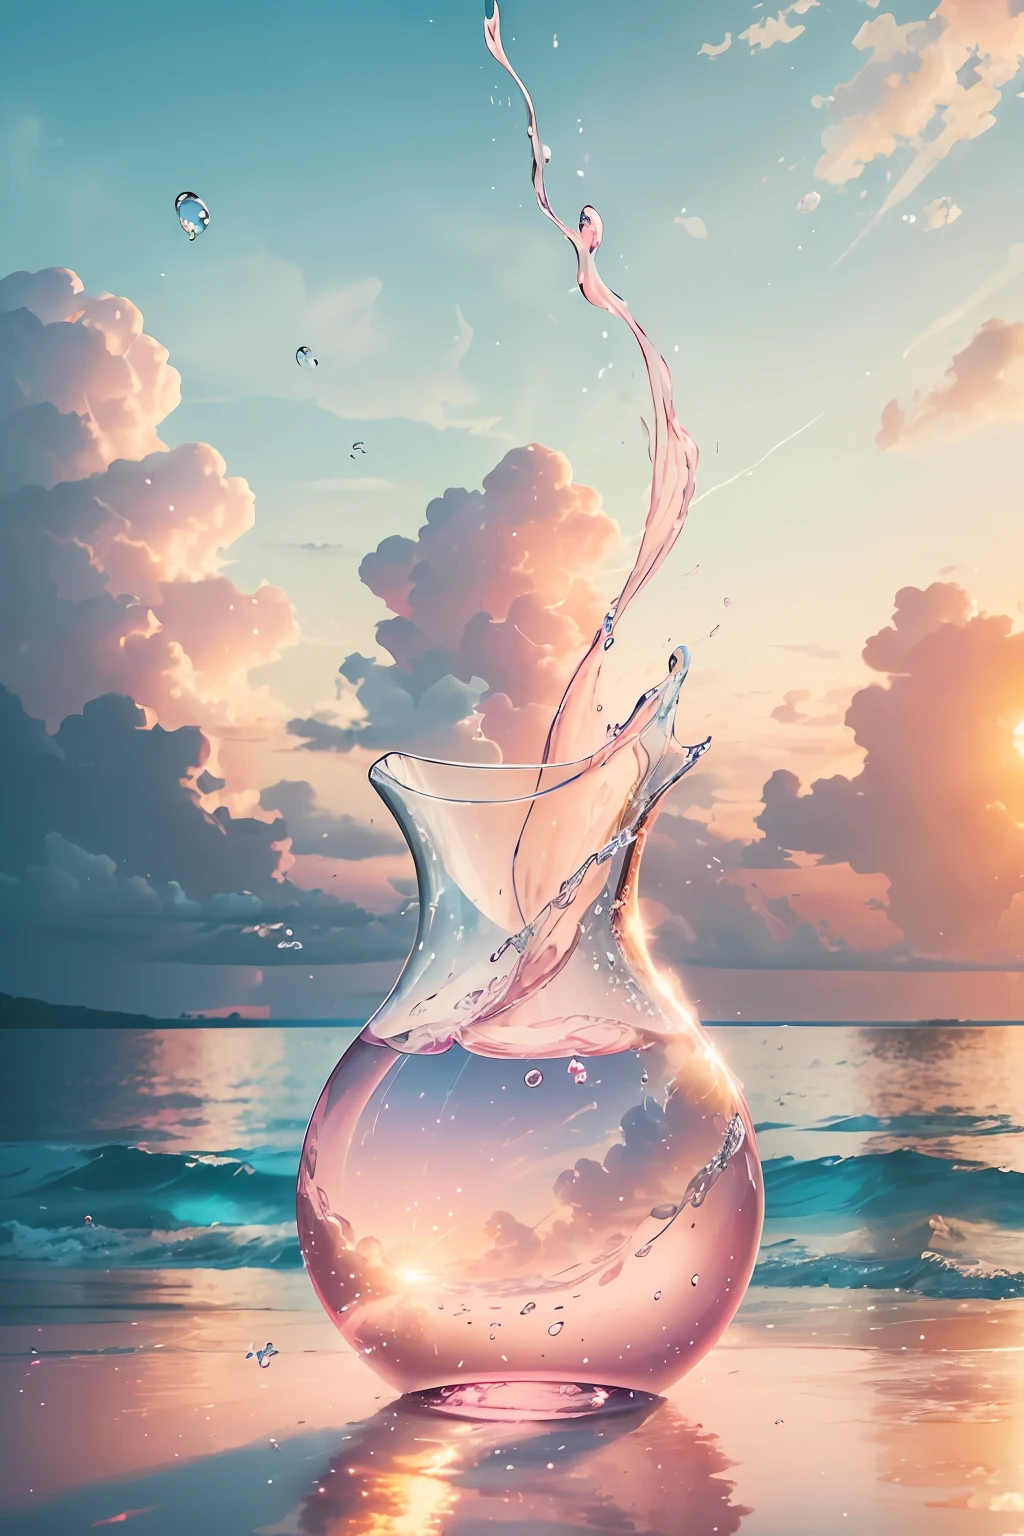 创建 4K 9:16 幅描绘热带海滩上令人惊叹的日出的图片, 海岸边有温柔的海浪和棕榈树. 配色应该充满活力，传达一种更新和积极的能量感.  想象一个透明的玻璃花瓶里装满了一朵柔和的粉红色云朵. 云是由微小的气泡组成的, 每一个都反射着一丝光芒. 你可以看到气泡在不断移动, 在花瓶中移动和旋转. 但尽管它们转瞬即逝, 它们给花瓶本身留下了深刻的印象. 当光线透过粉色云层, 它在玻璃上投射出柔和的光芒, 改变其本质. 就像泡沫一样, 欢乐的时刻可能转瞬即逝, 但它们给你灵魂留下的印象就像柔软的粉色云朵, 照亮你的本质并永远改变你.